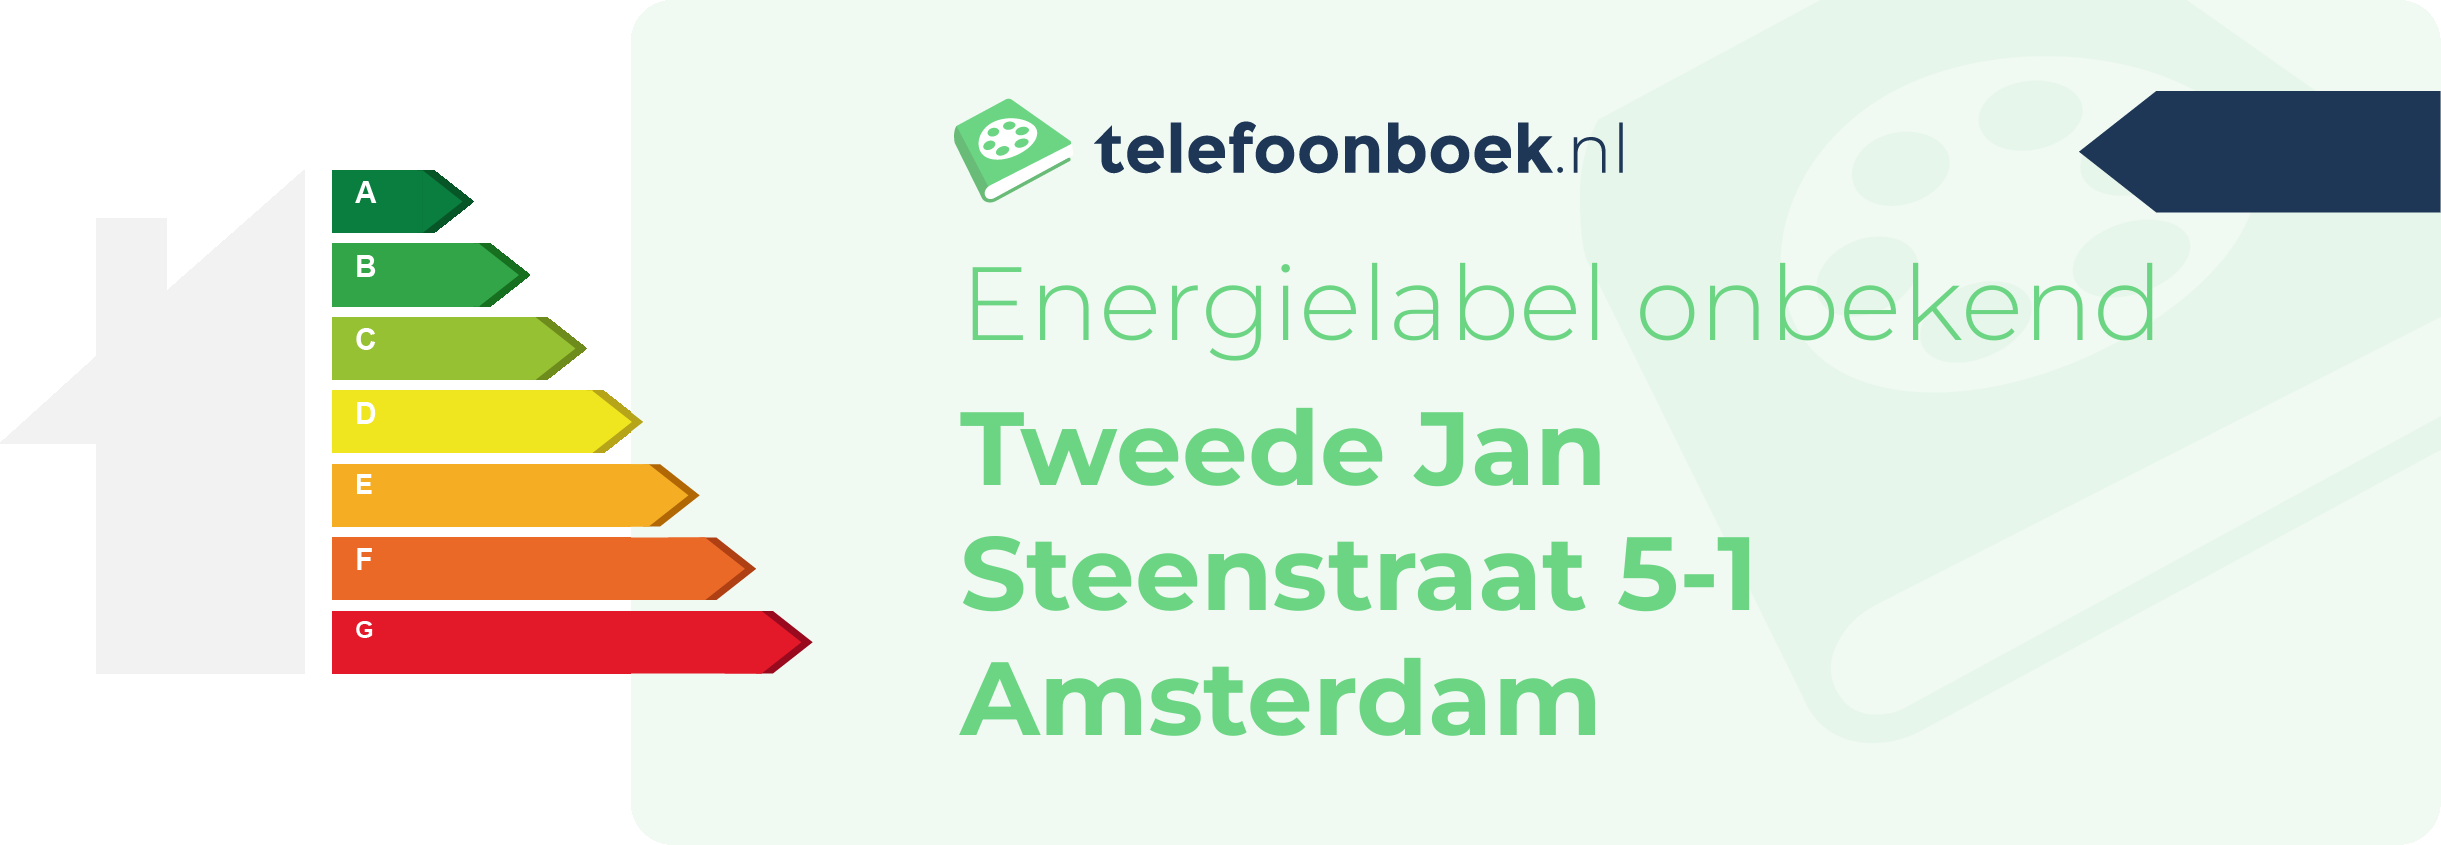 Energielabel Tweede Jan Steenstraat 5-1 Amsterdam